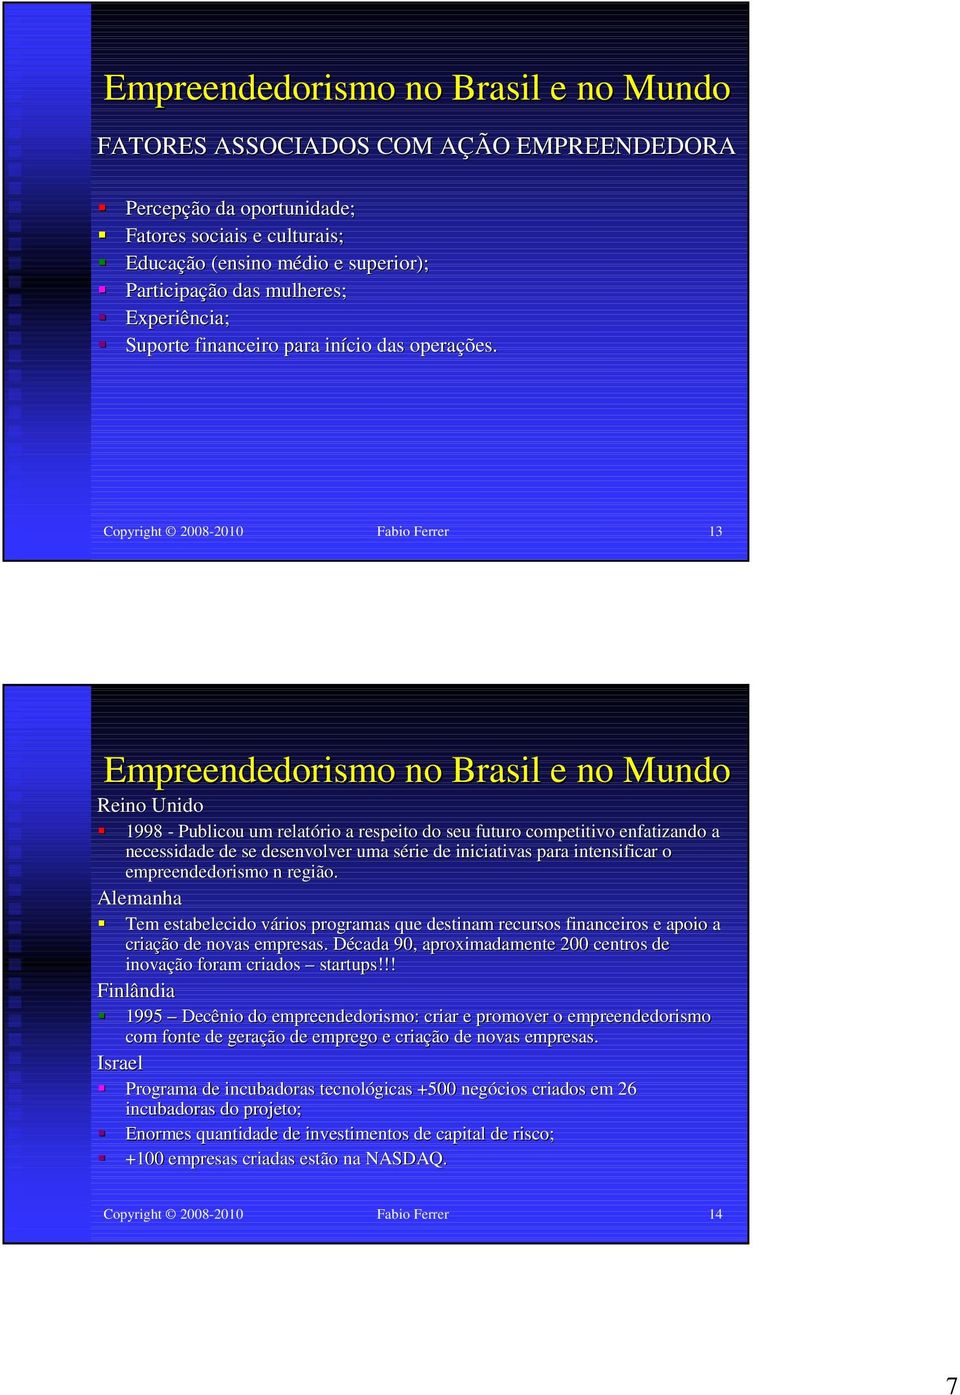 Copyright 2008-2010 Fabio Ferrer 13 Empreendedorismo no Brasil e no Mundo Reino Unido 1998 - Publicou um relatório a respeito do seu futuro competitivo enfatizando a necessidade de se desenvolver uma